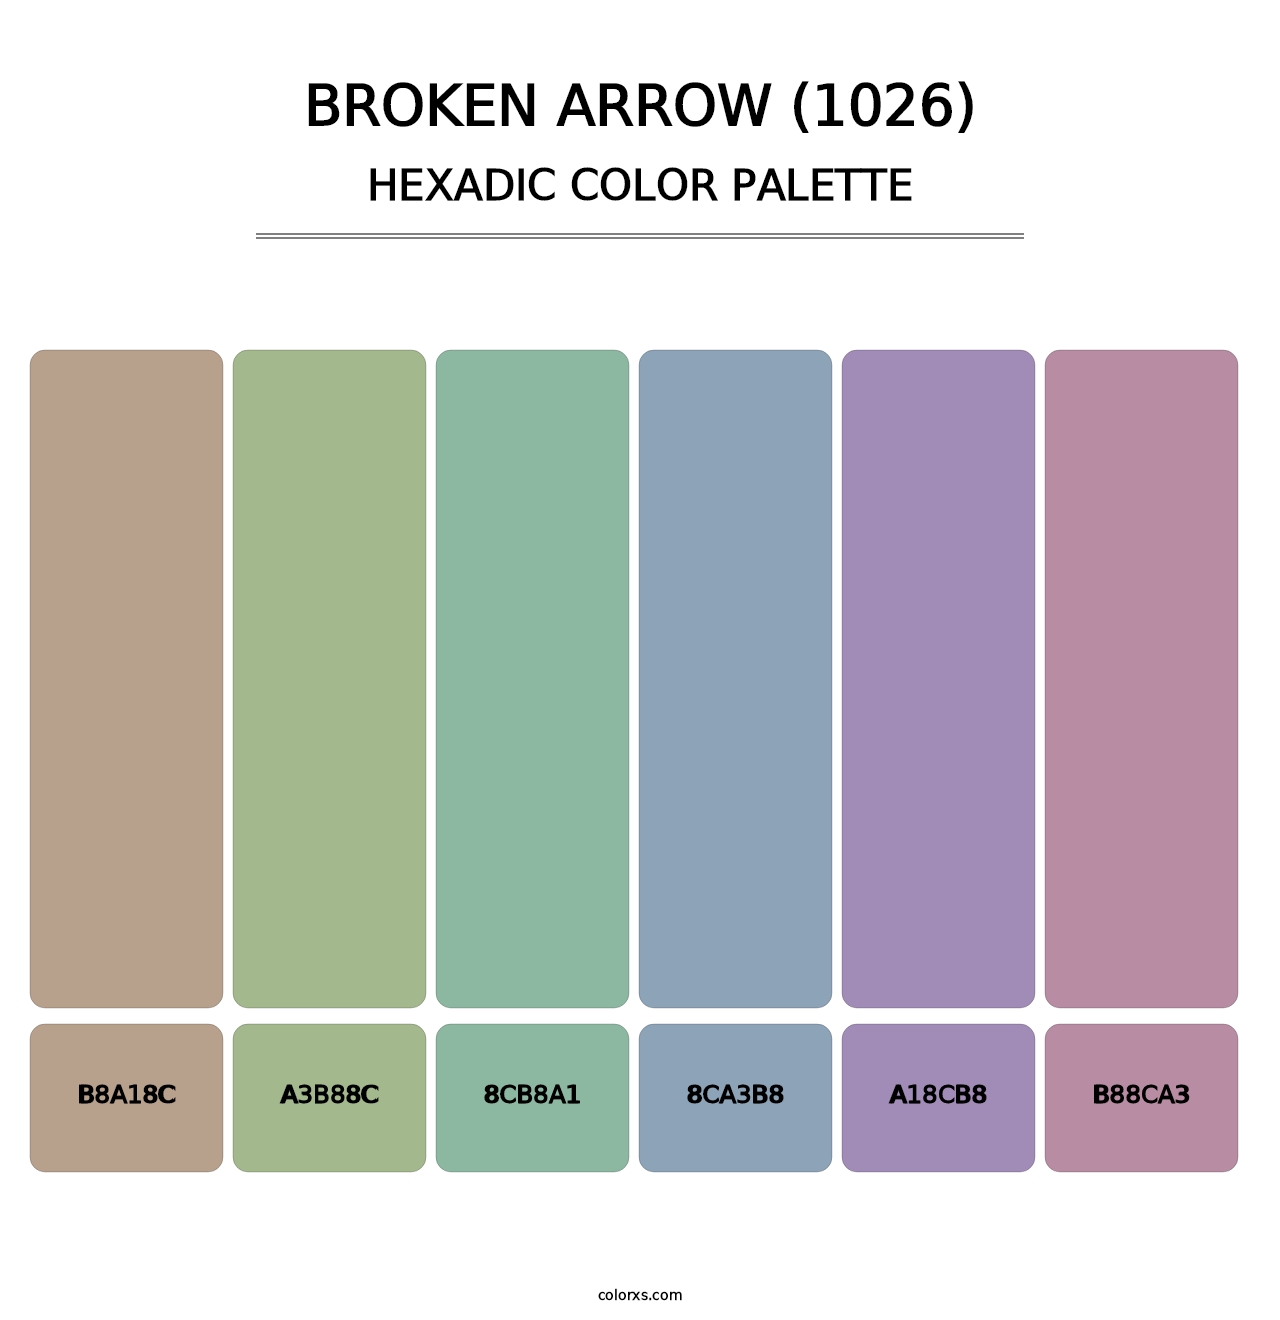 Broken Arrow (1026) - Hexadic Color Palette